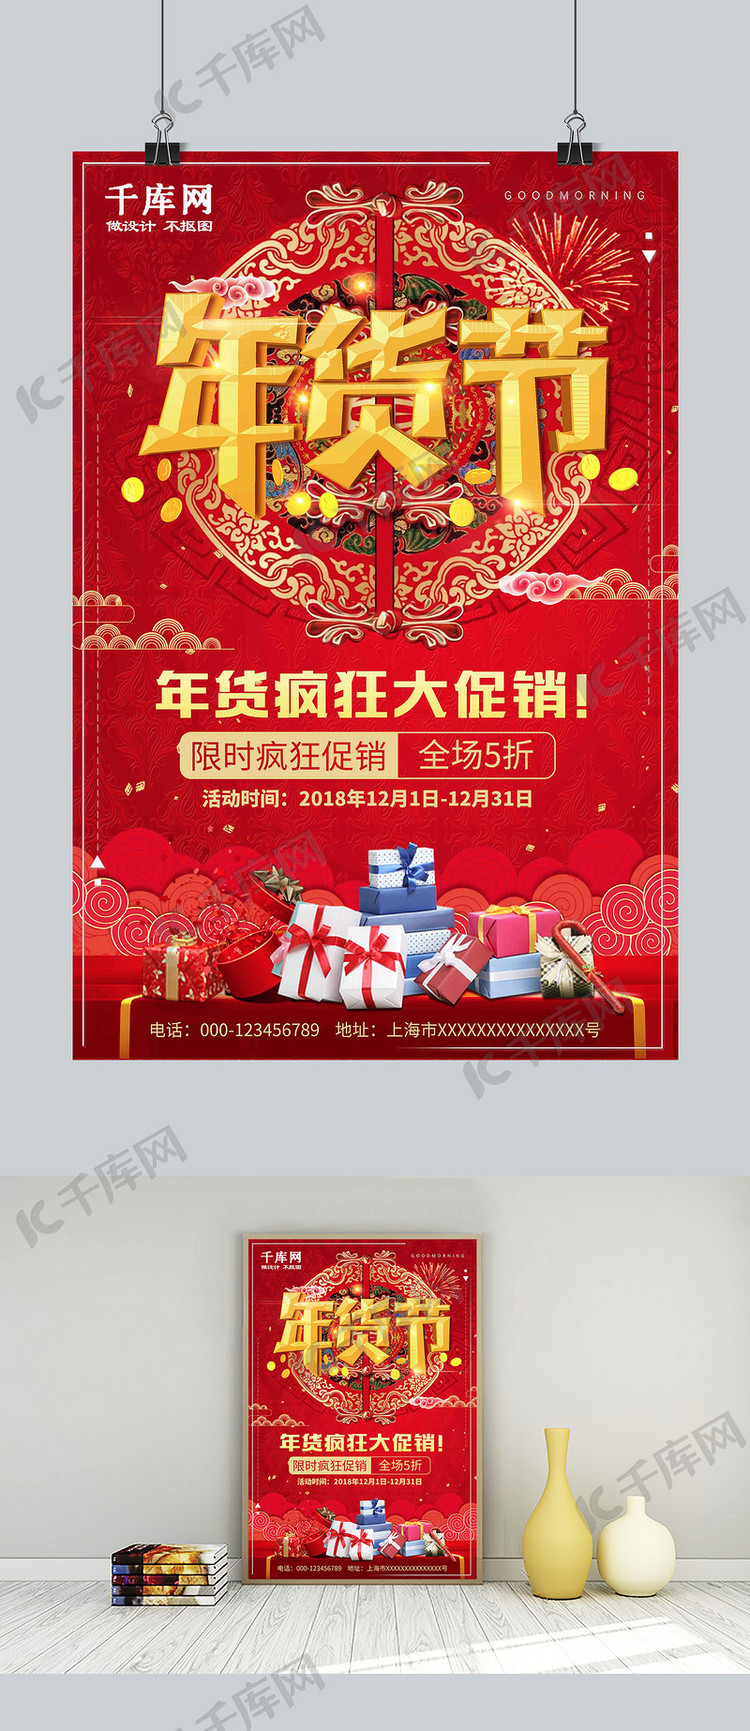 大红喜庆年货节疯狂大促销优惠宣传海报